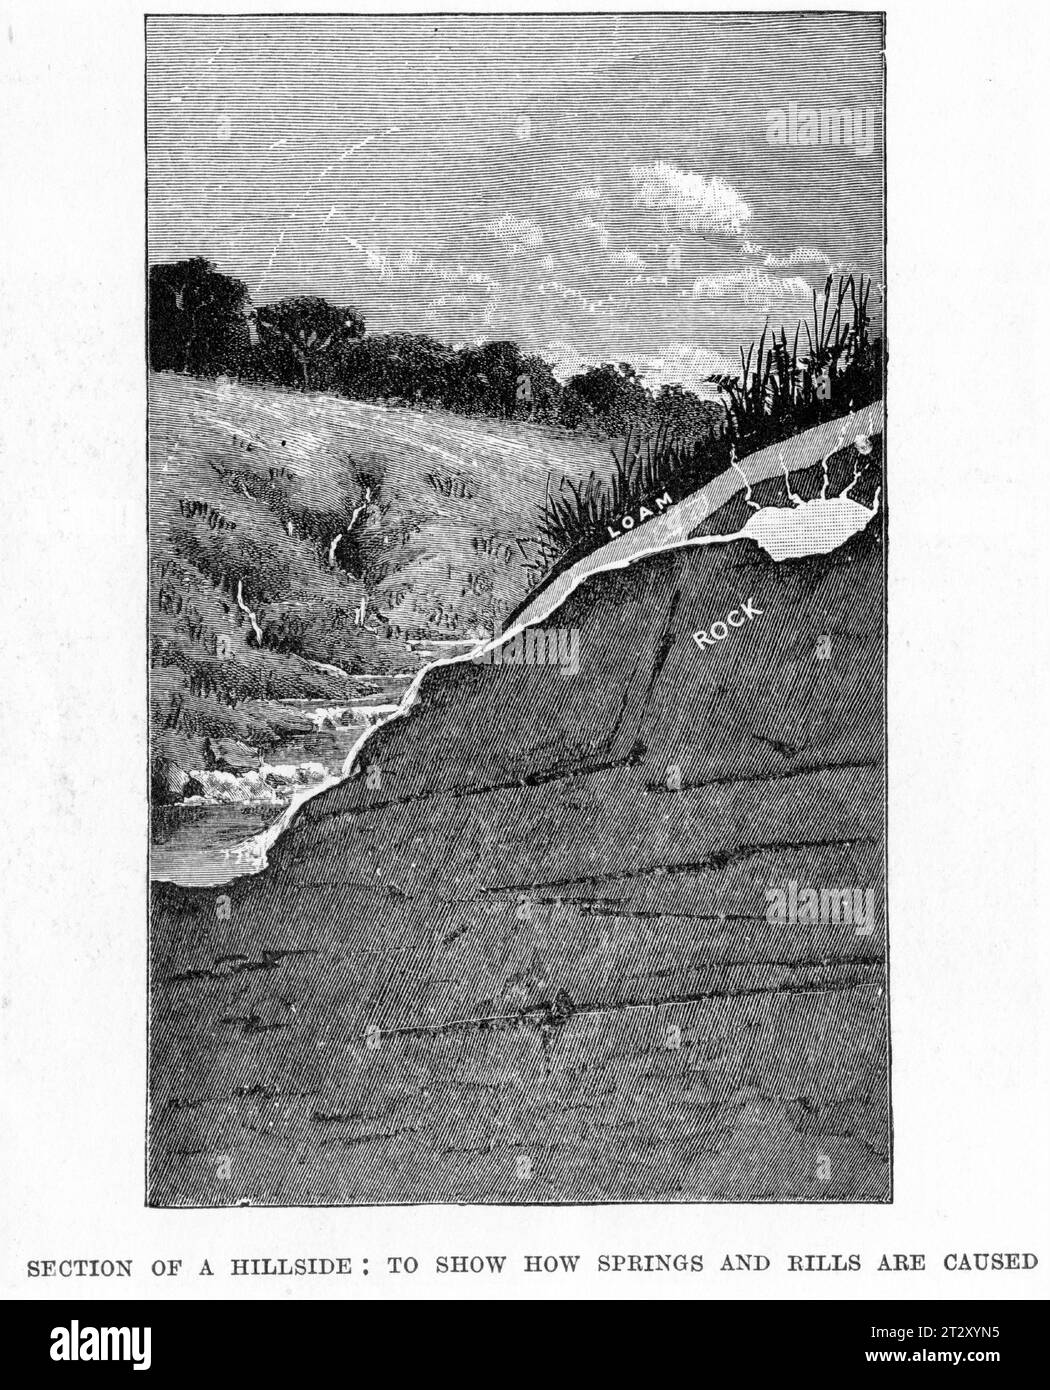 Gravierte Illustration aus einem Geographiebuch, das zeigt, wie eine Feder in einem Hügel gebildet wird, um 1900 Stockfoto